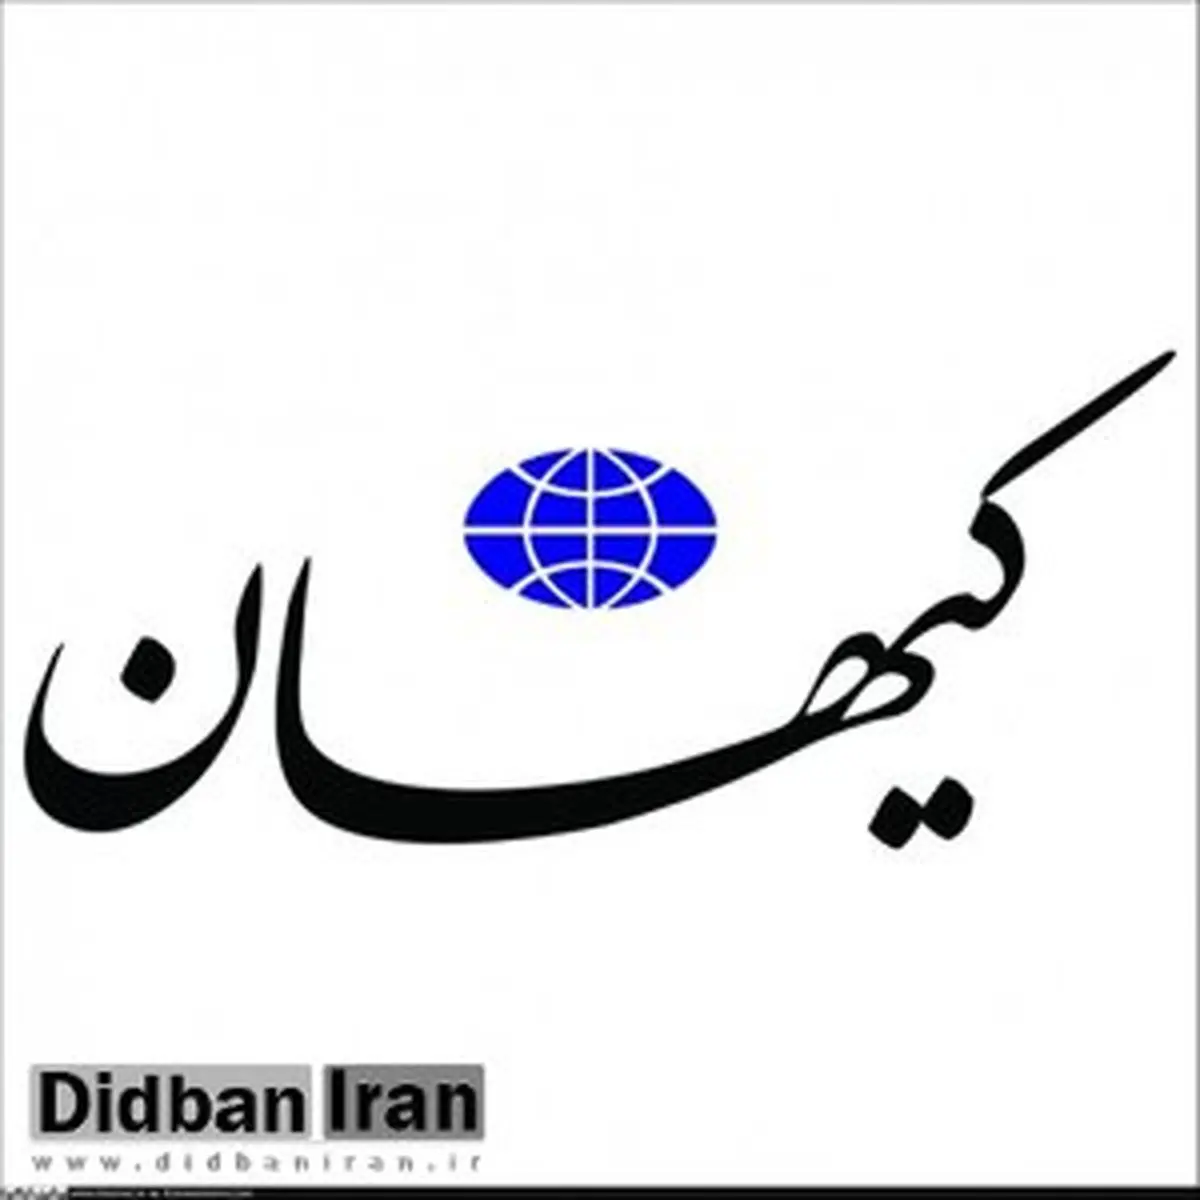 انتقاد کیهان از انتصاب هیئت داوری جشنواره فیلم فجر |  ساره بیات چندفیلم ضعیف بازی کرده؛مصطفی کیایی هم موفق نبوده